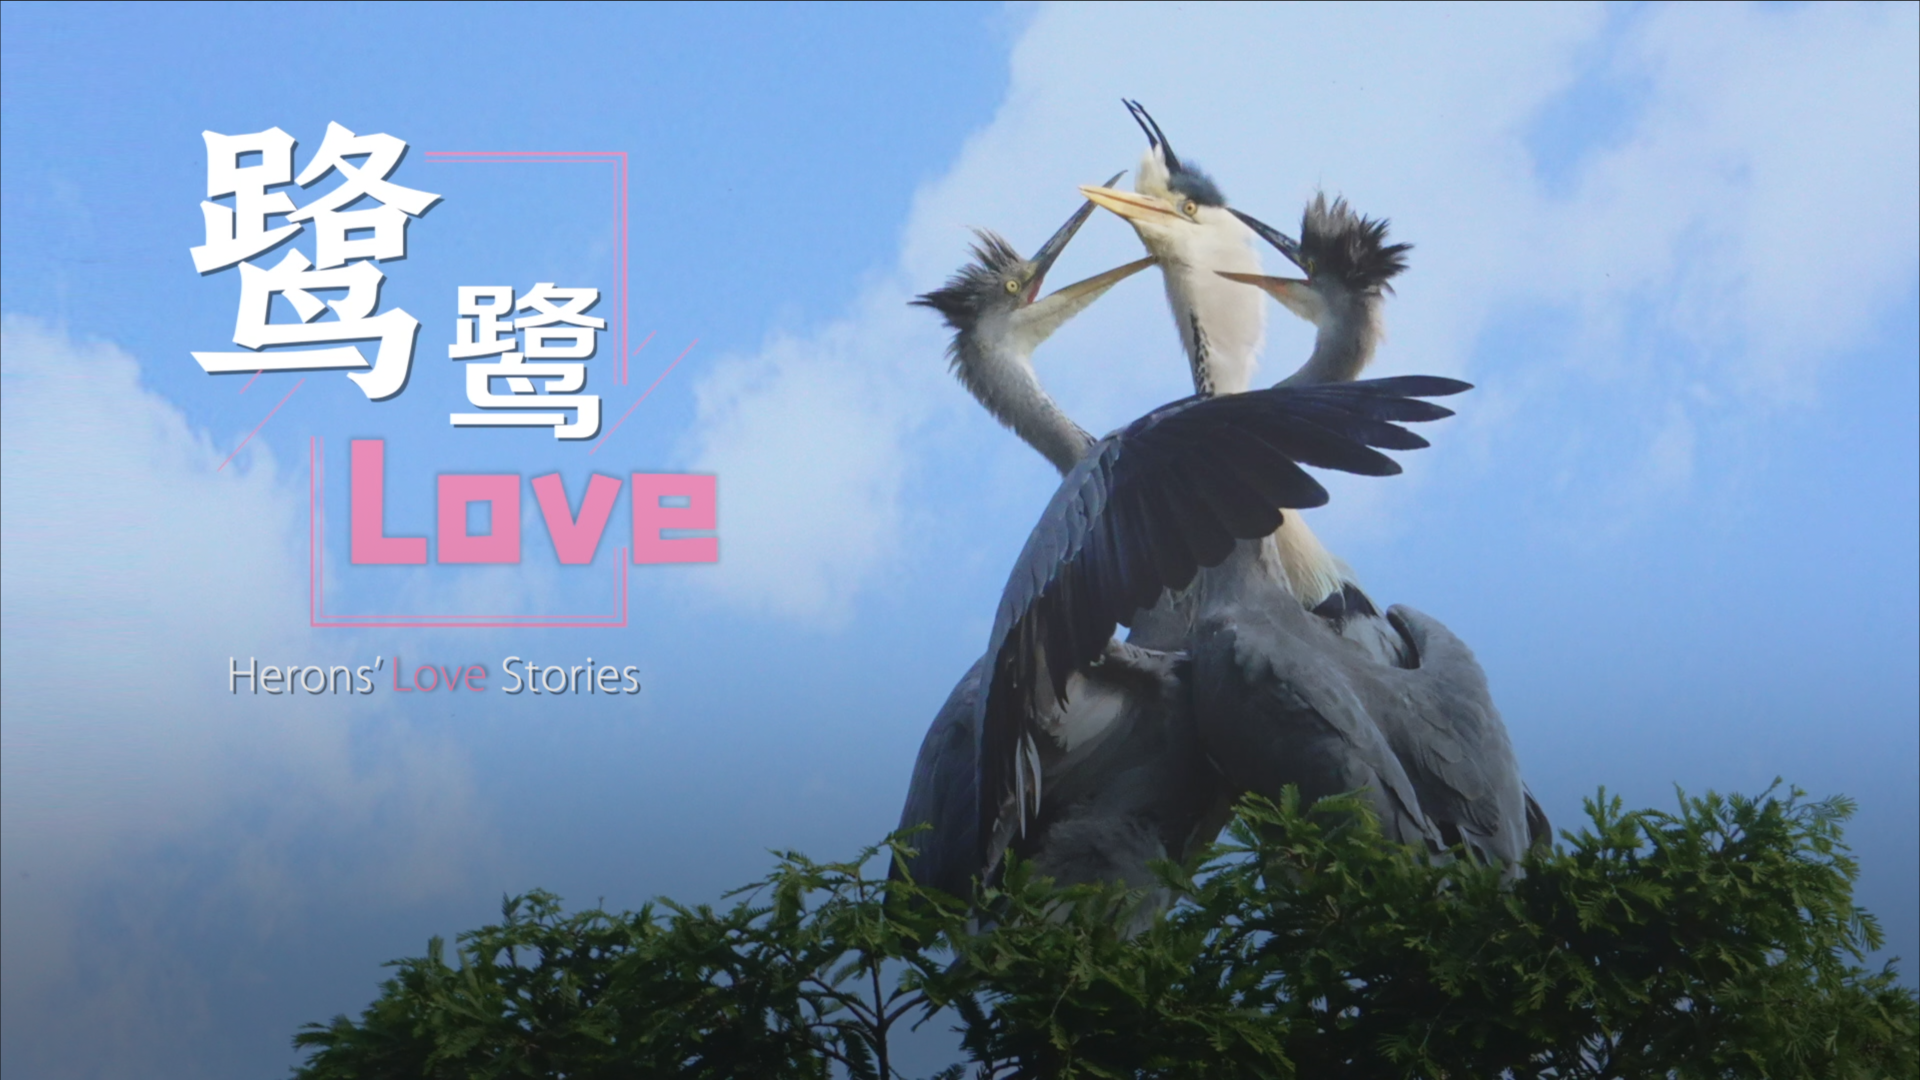 Heron's love stories: Bird romance in Chengdu's Huanhuaxi Park - CGTN